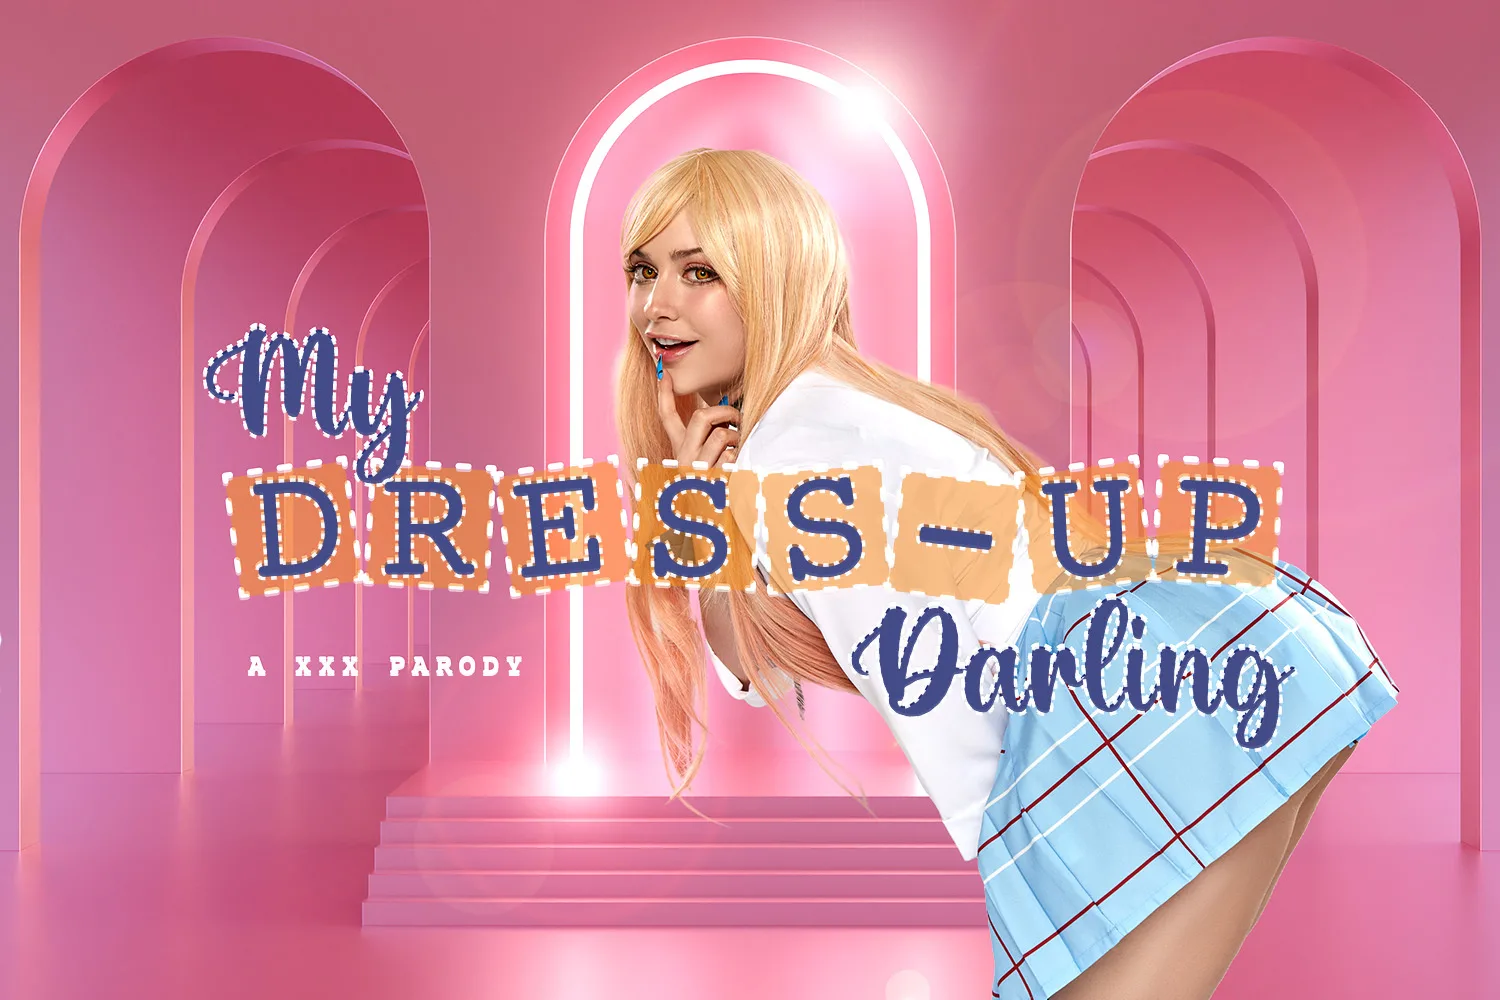 [2022-09-22] My Dress-Up Darling: Marin Kitagawa A XXX Parody - VRCosplayX